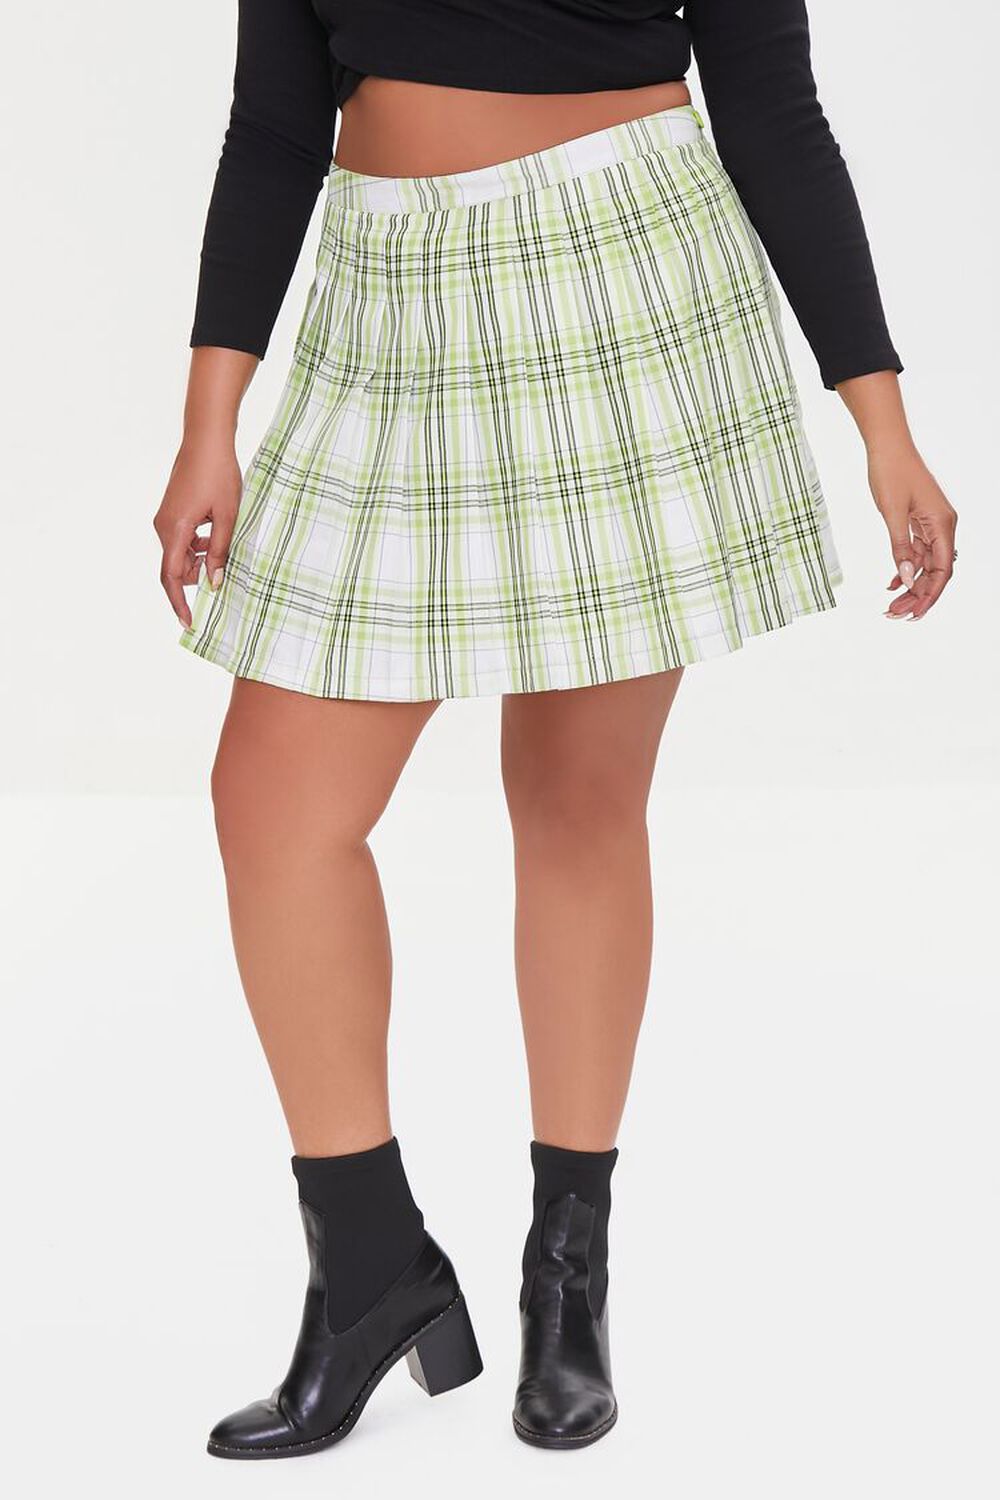 LIME/MULTI Plus Size Pleated Plaid Mini Skirt, image 2